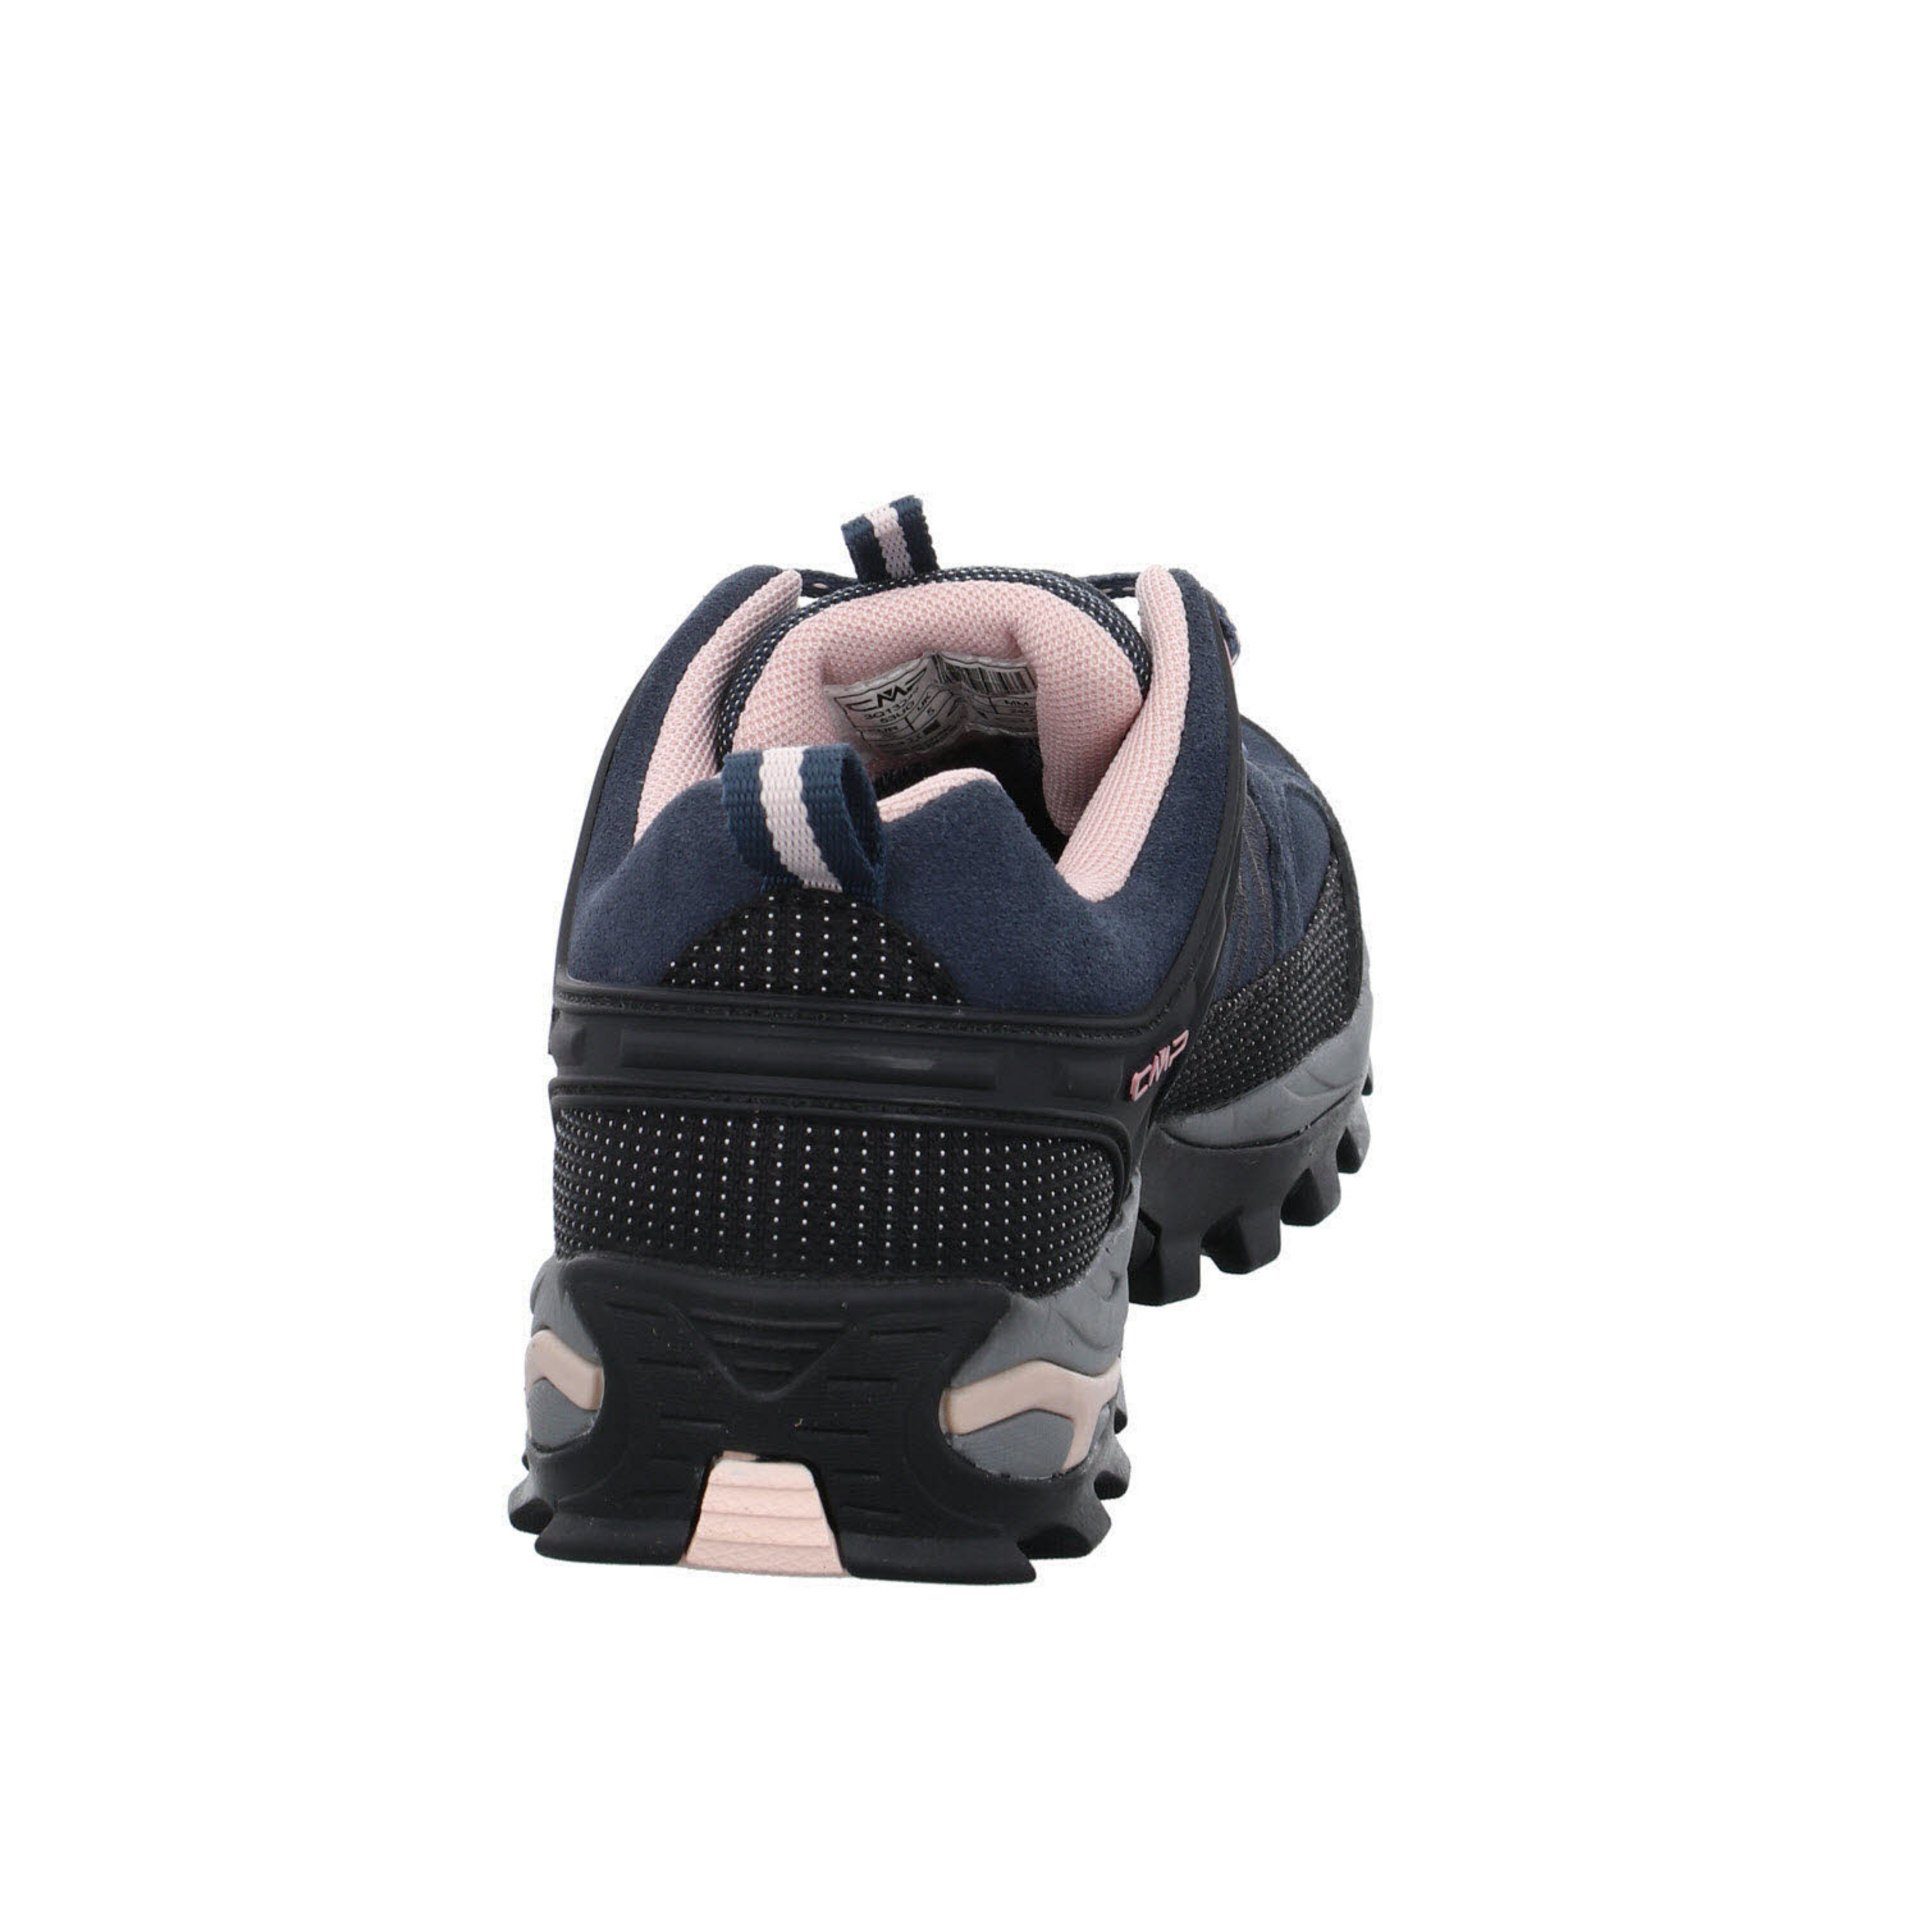 CMP Damen Schuhe Outdoor 53UG ASPHALT-ANTRACITE-ROSE Outdoorschuh Riegel Low Leder-/Textilkombination Outdoorschuh